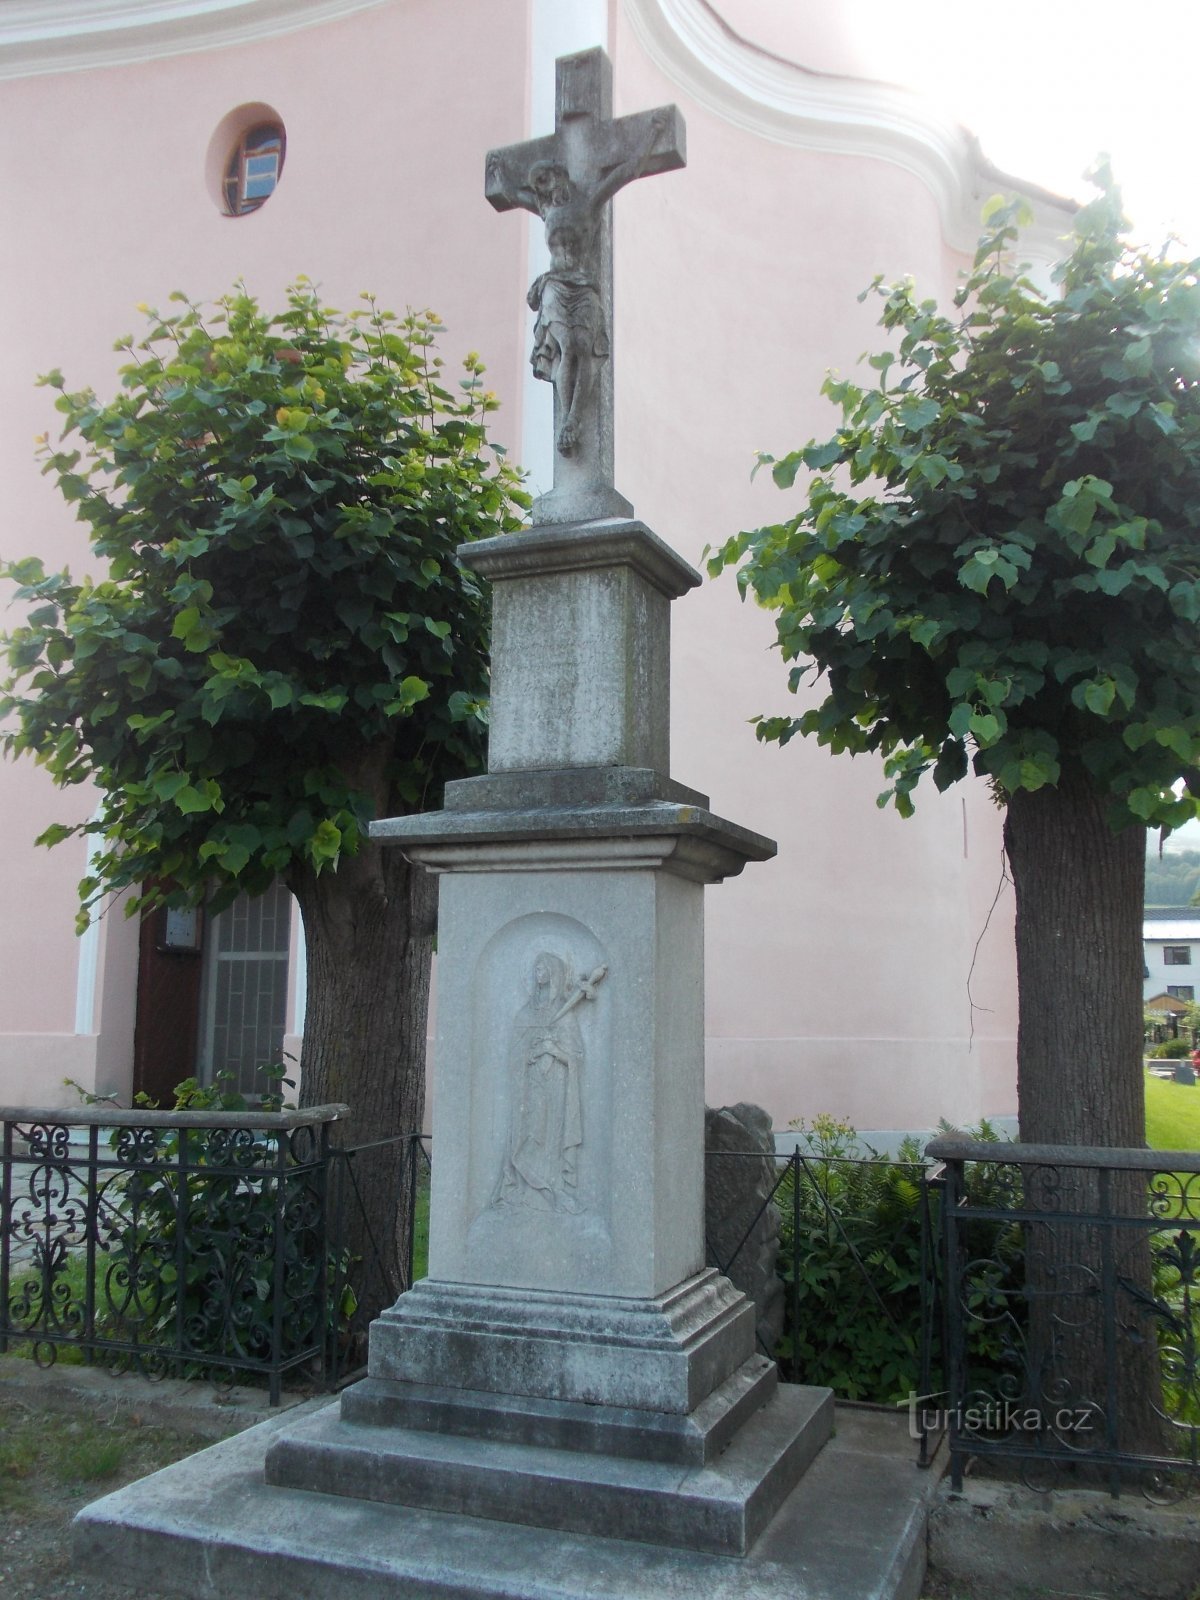 πέτρινος σταυρός μπροστά από την εκκλησία